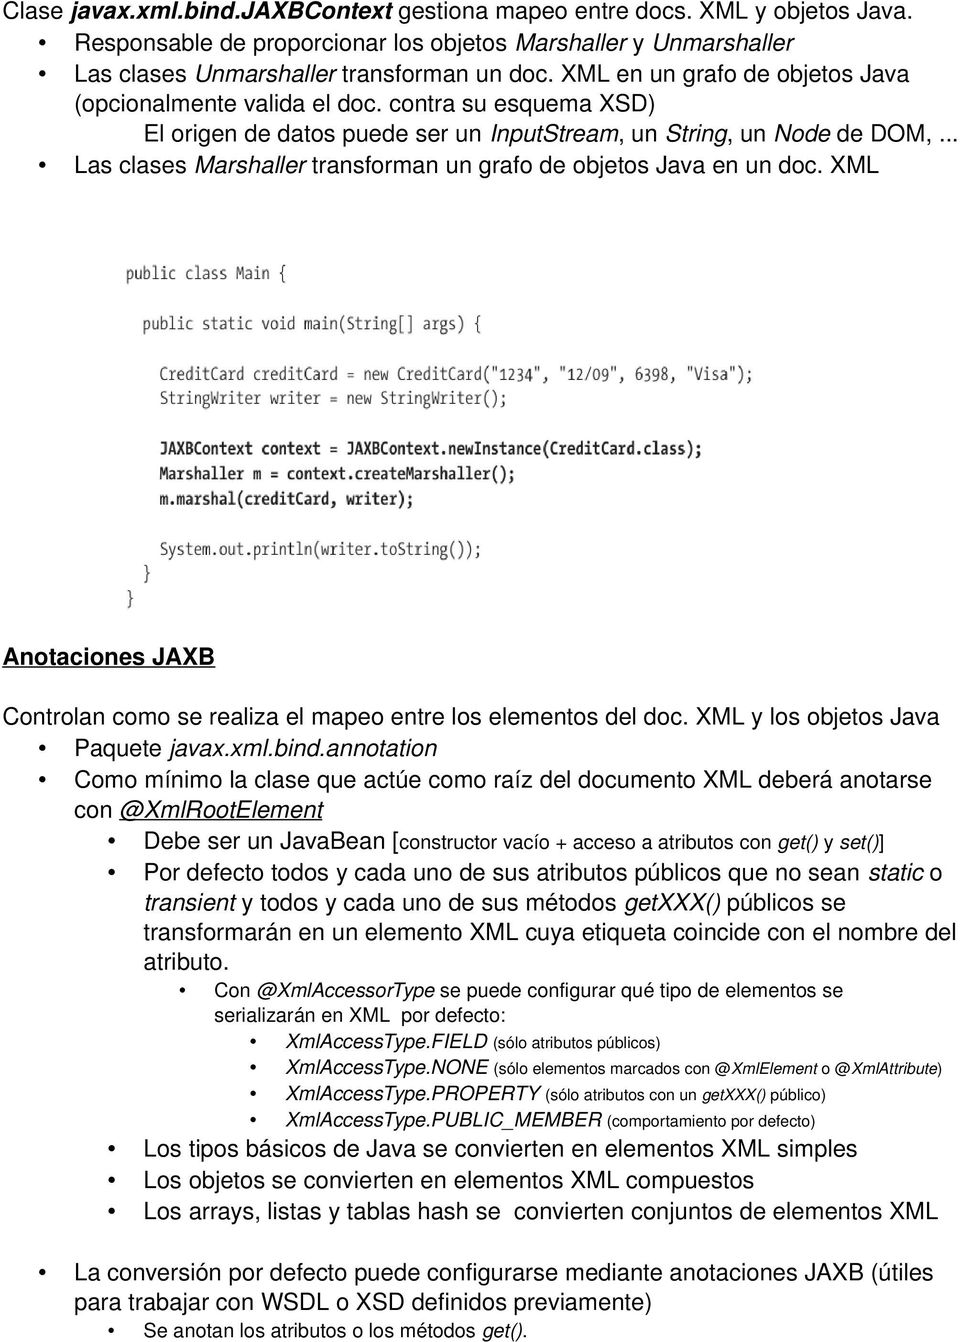 .. Las clases Marshaller transforman un grafo de objetos Java en un doc. XML Anotaciones JAXB Controlan como se realiza el mapeo entre los elementos del doc. XML y los objetos Java Paquete javax.xml.